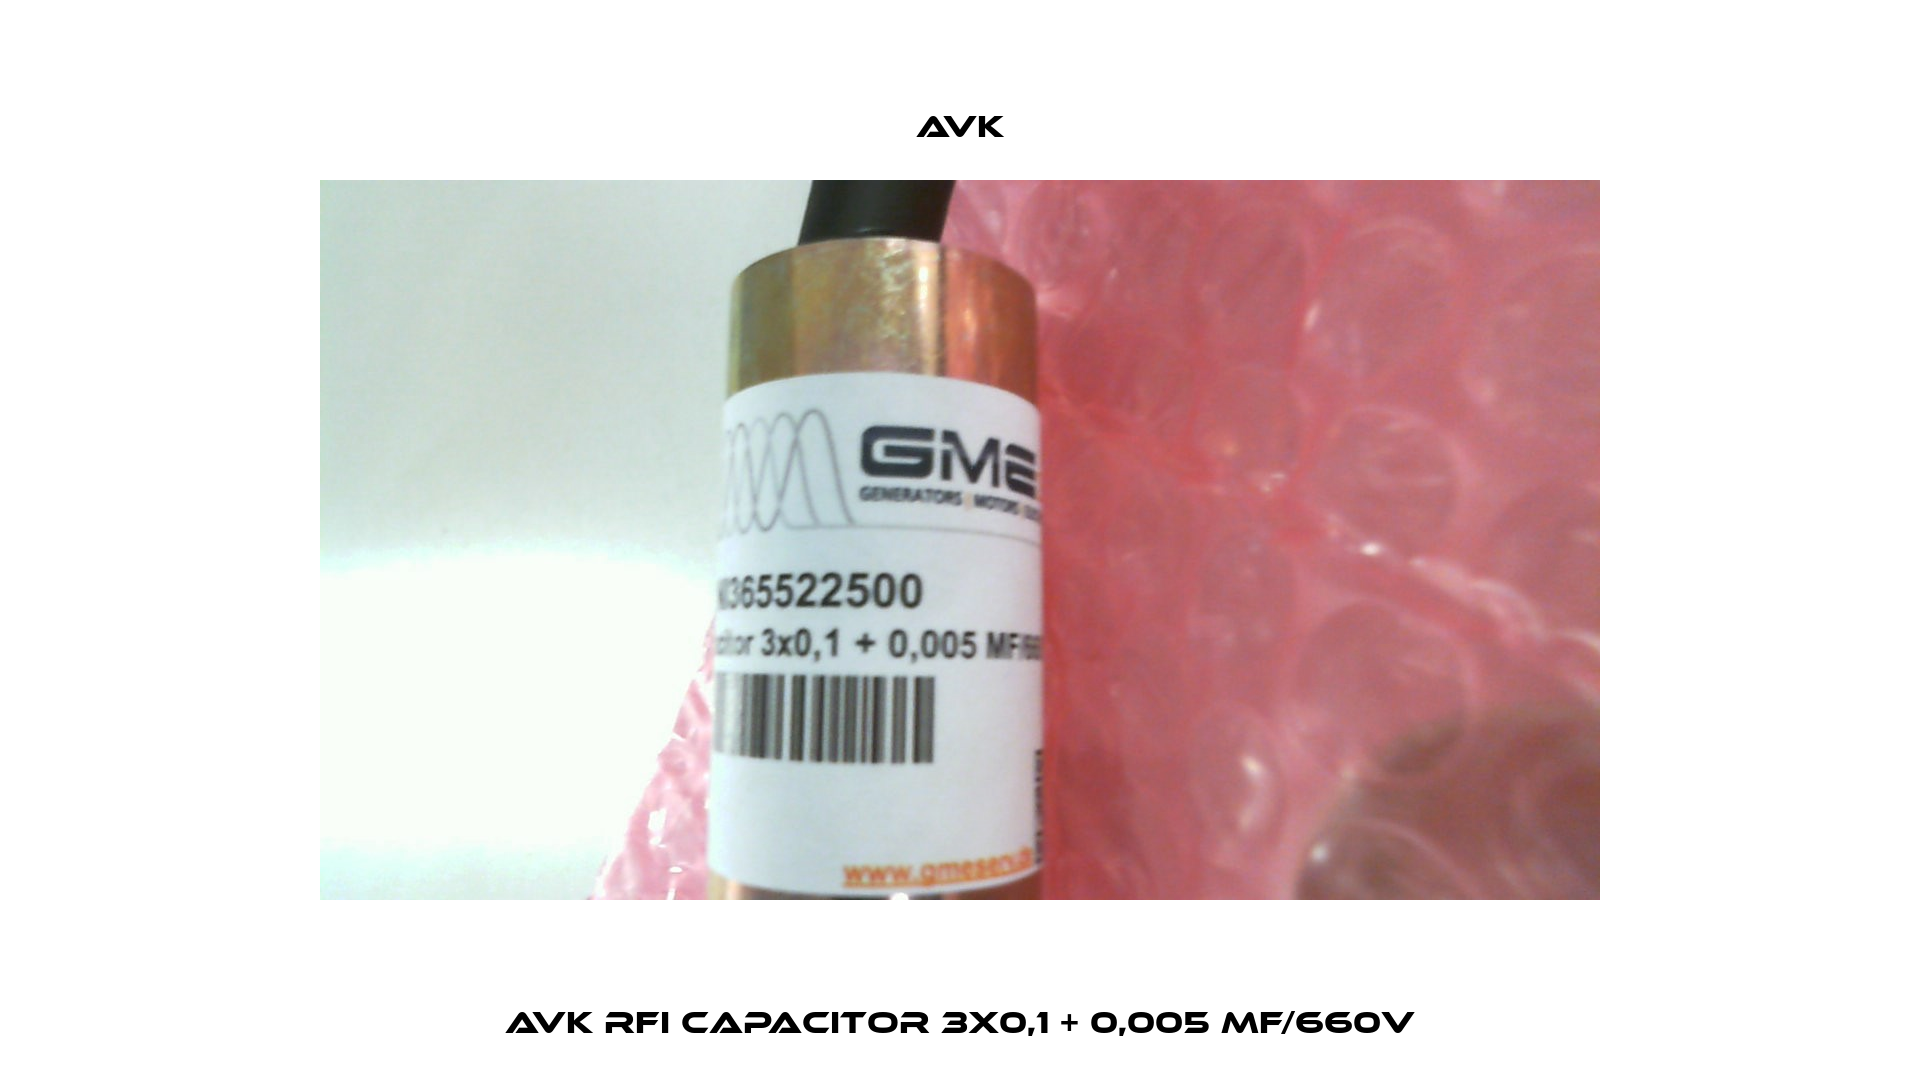 AvK RFI capacitor 3x0,1 + 0,005 MF/660V AVK